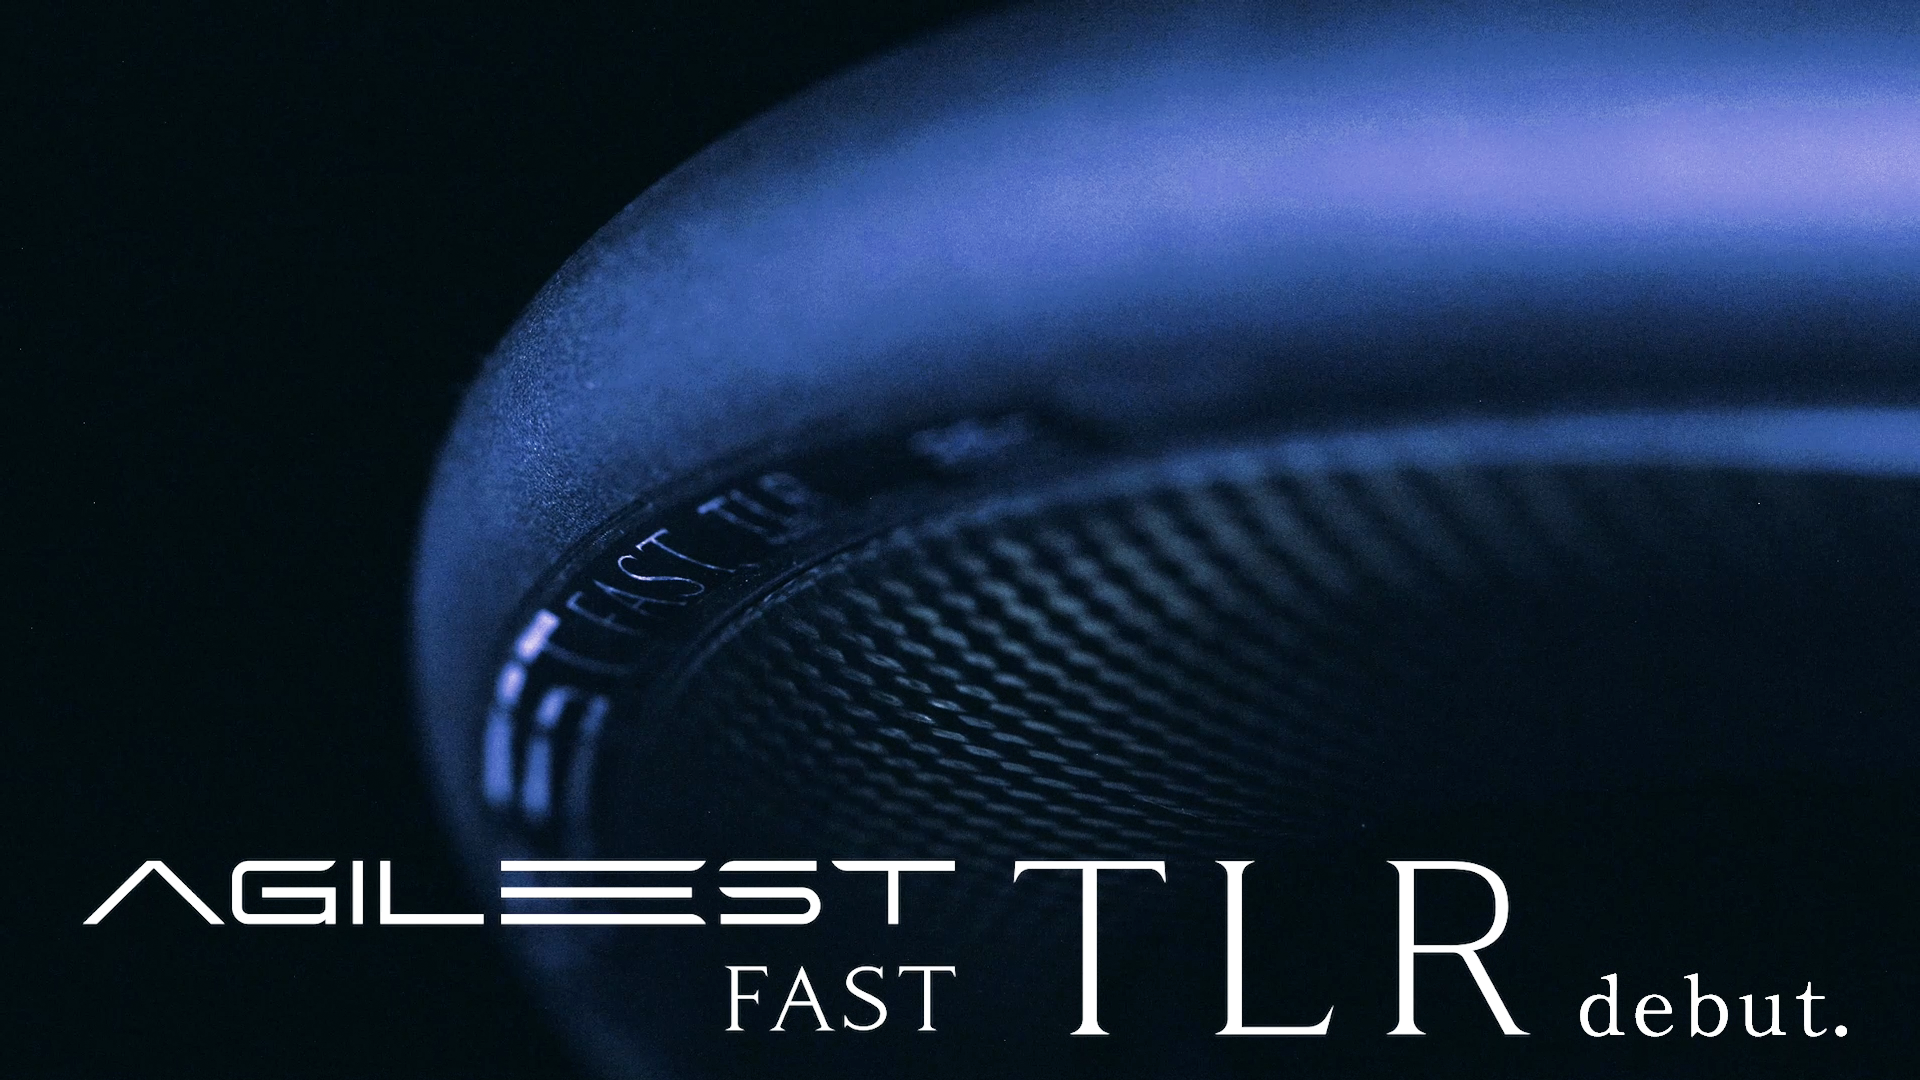 あたらしい速さへ。パナレーサーの“最速傑作” 『AGILEST FAST TLR（アジリスト ファスト TLR）』本日7月1日発...